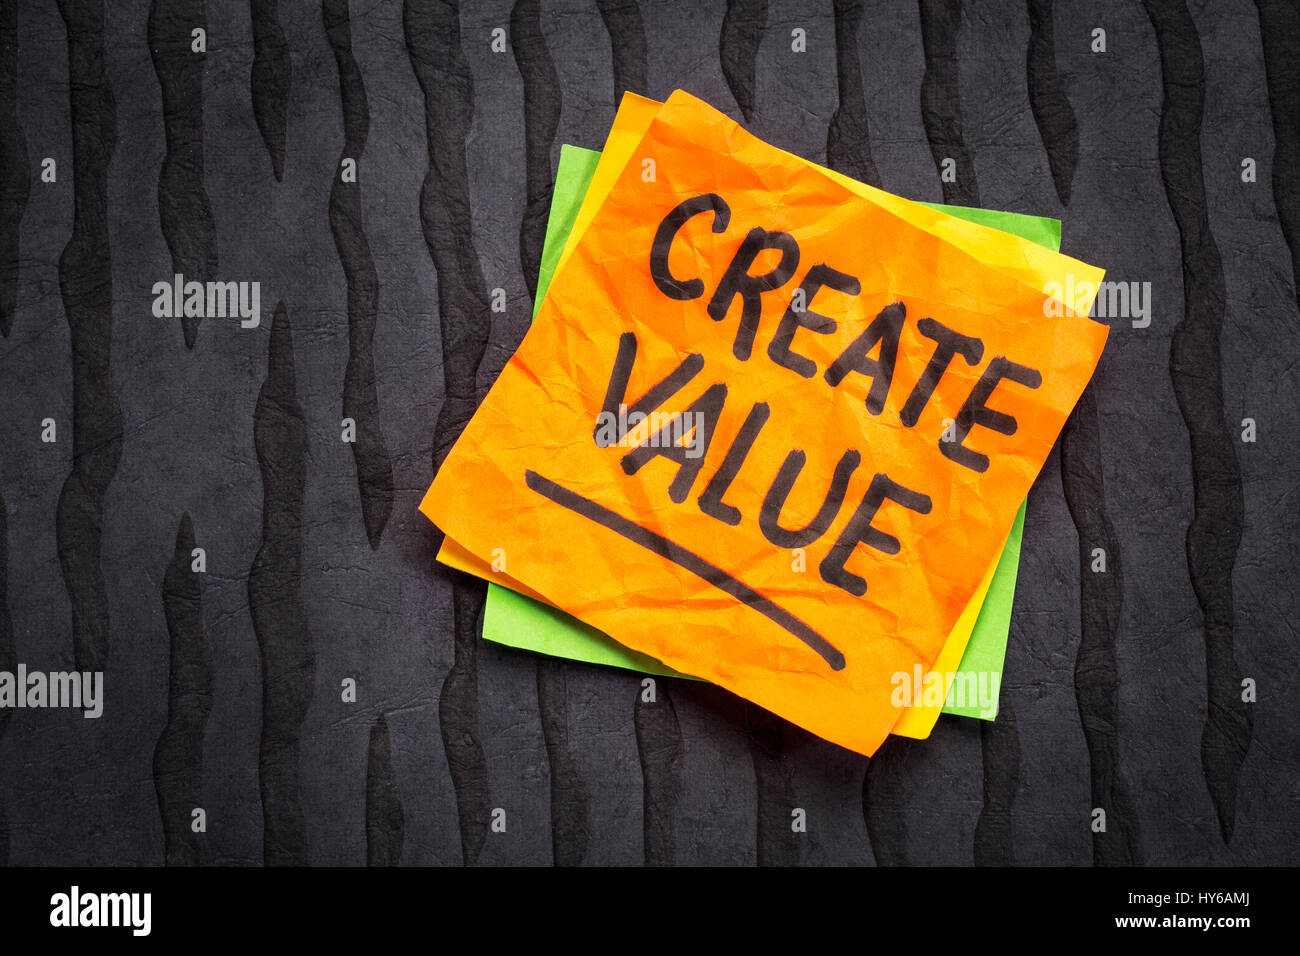 Creare valore di promemoria o consigli - ispirazione concetto - scrittura su un foglietto adesivo contro nero carta lokta Foto Stock